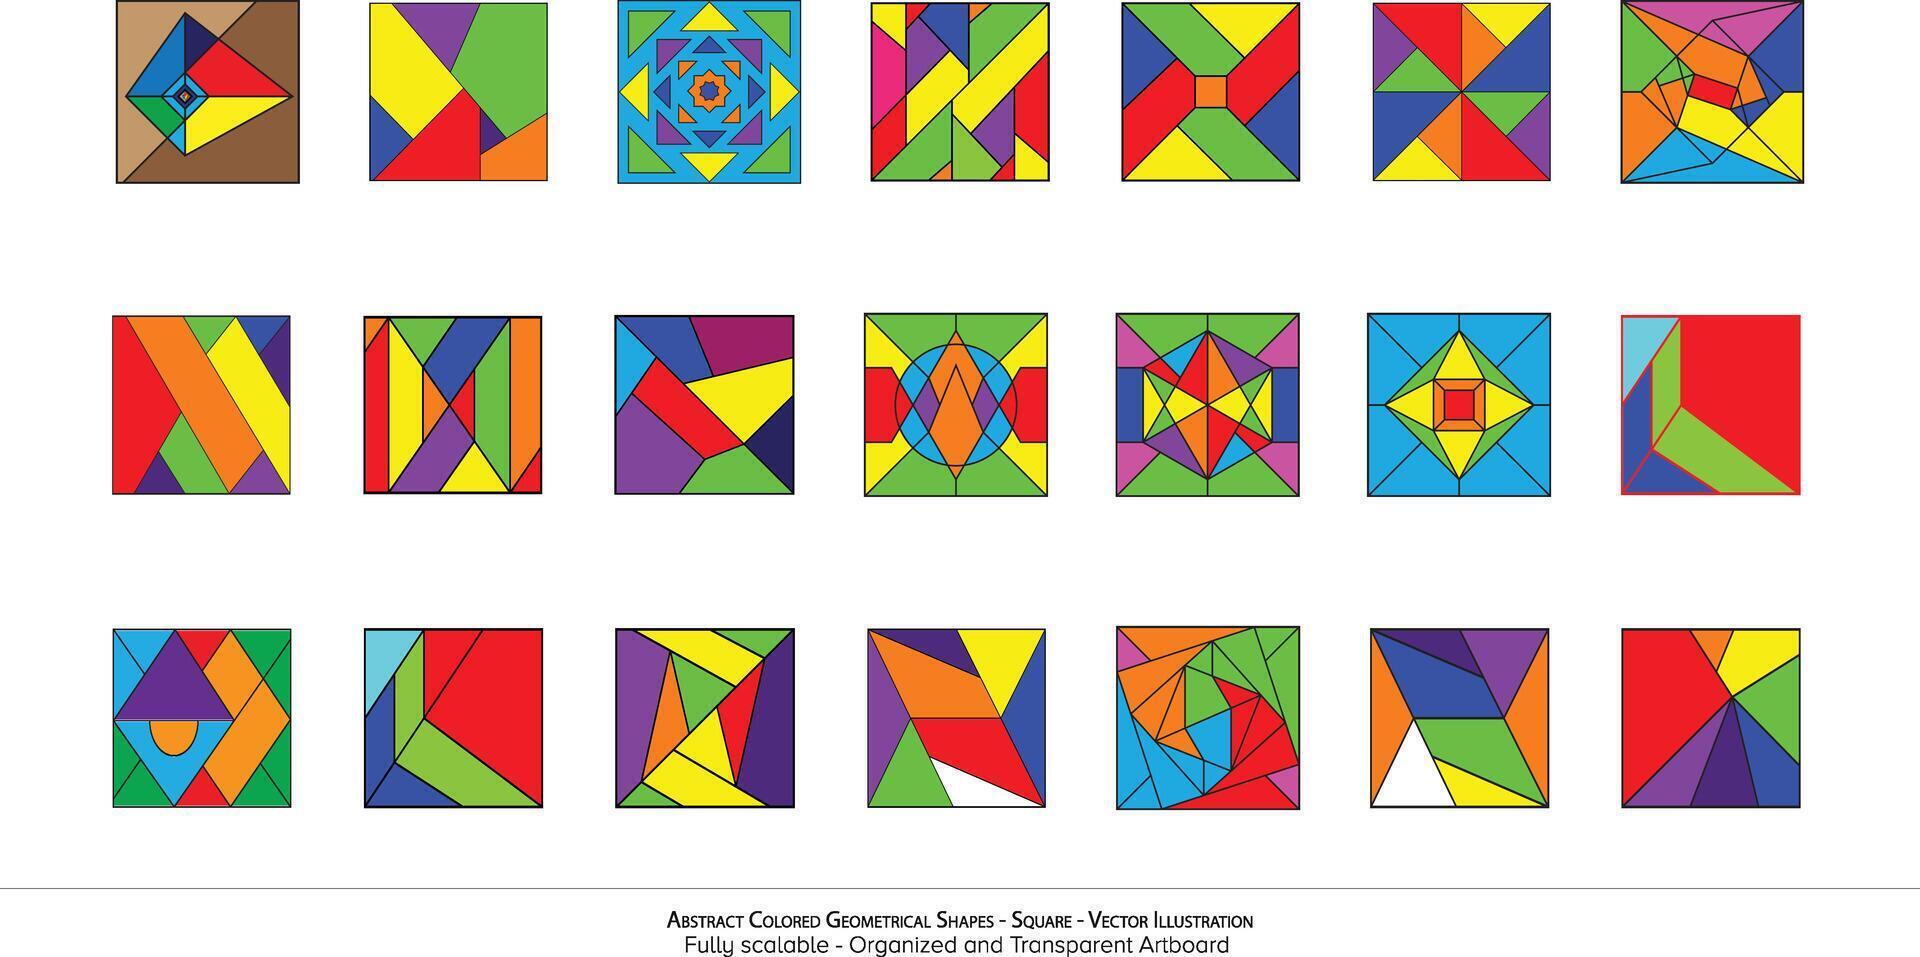 abstrakt färgad geometrisk former - fyrkant - vektor illustration. modern vägg konst. en mosaik- av identiteter i vibrerande pixlar. lekfull geometrisk former skapande en känsla av rörelse.